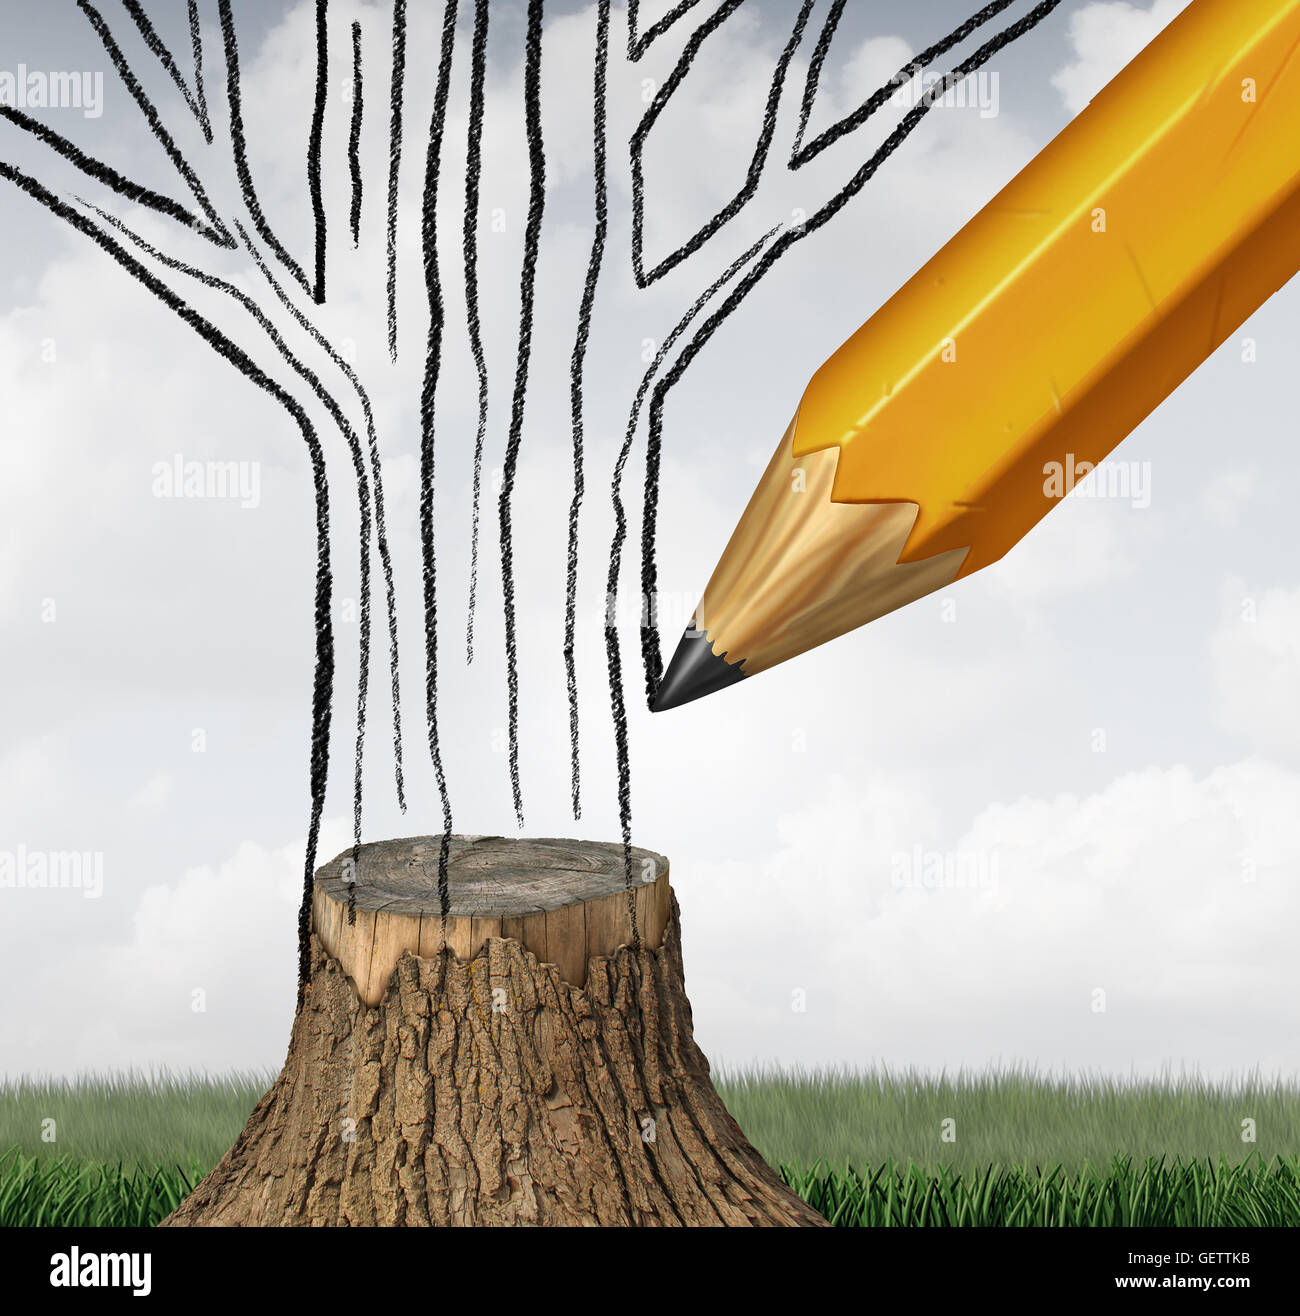 Climat de reboisement et de conservation comme un concept environnemental avec un dessin au crayon la partie manquante d'un tronc d'arbre coupé comme un symbole pour le changement climatique de la gestion écologique durable avec 3D illustration éléments. Banque D'Images